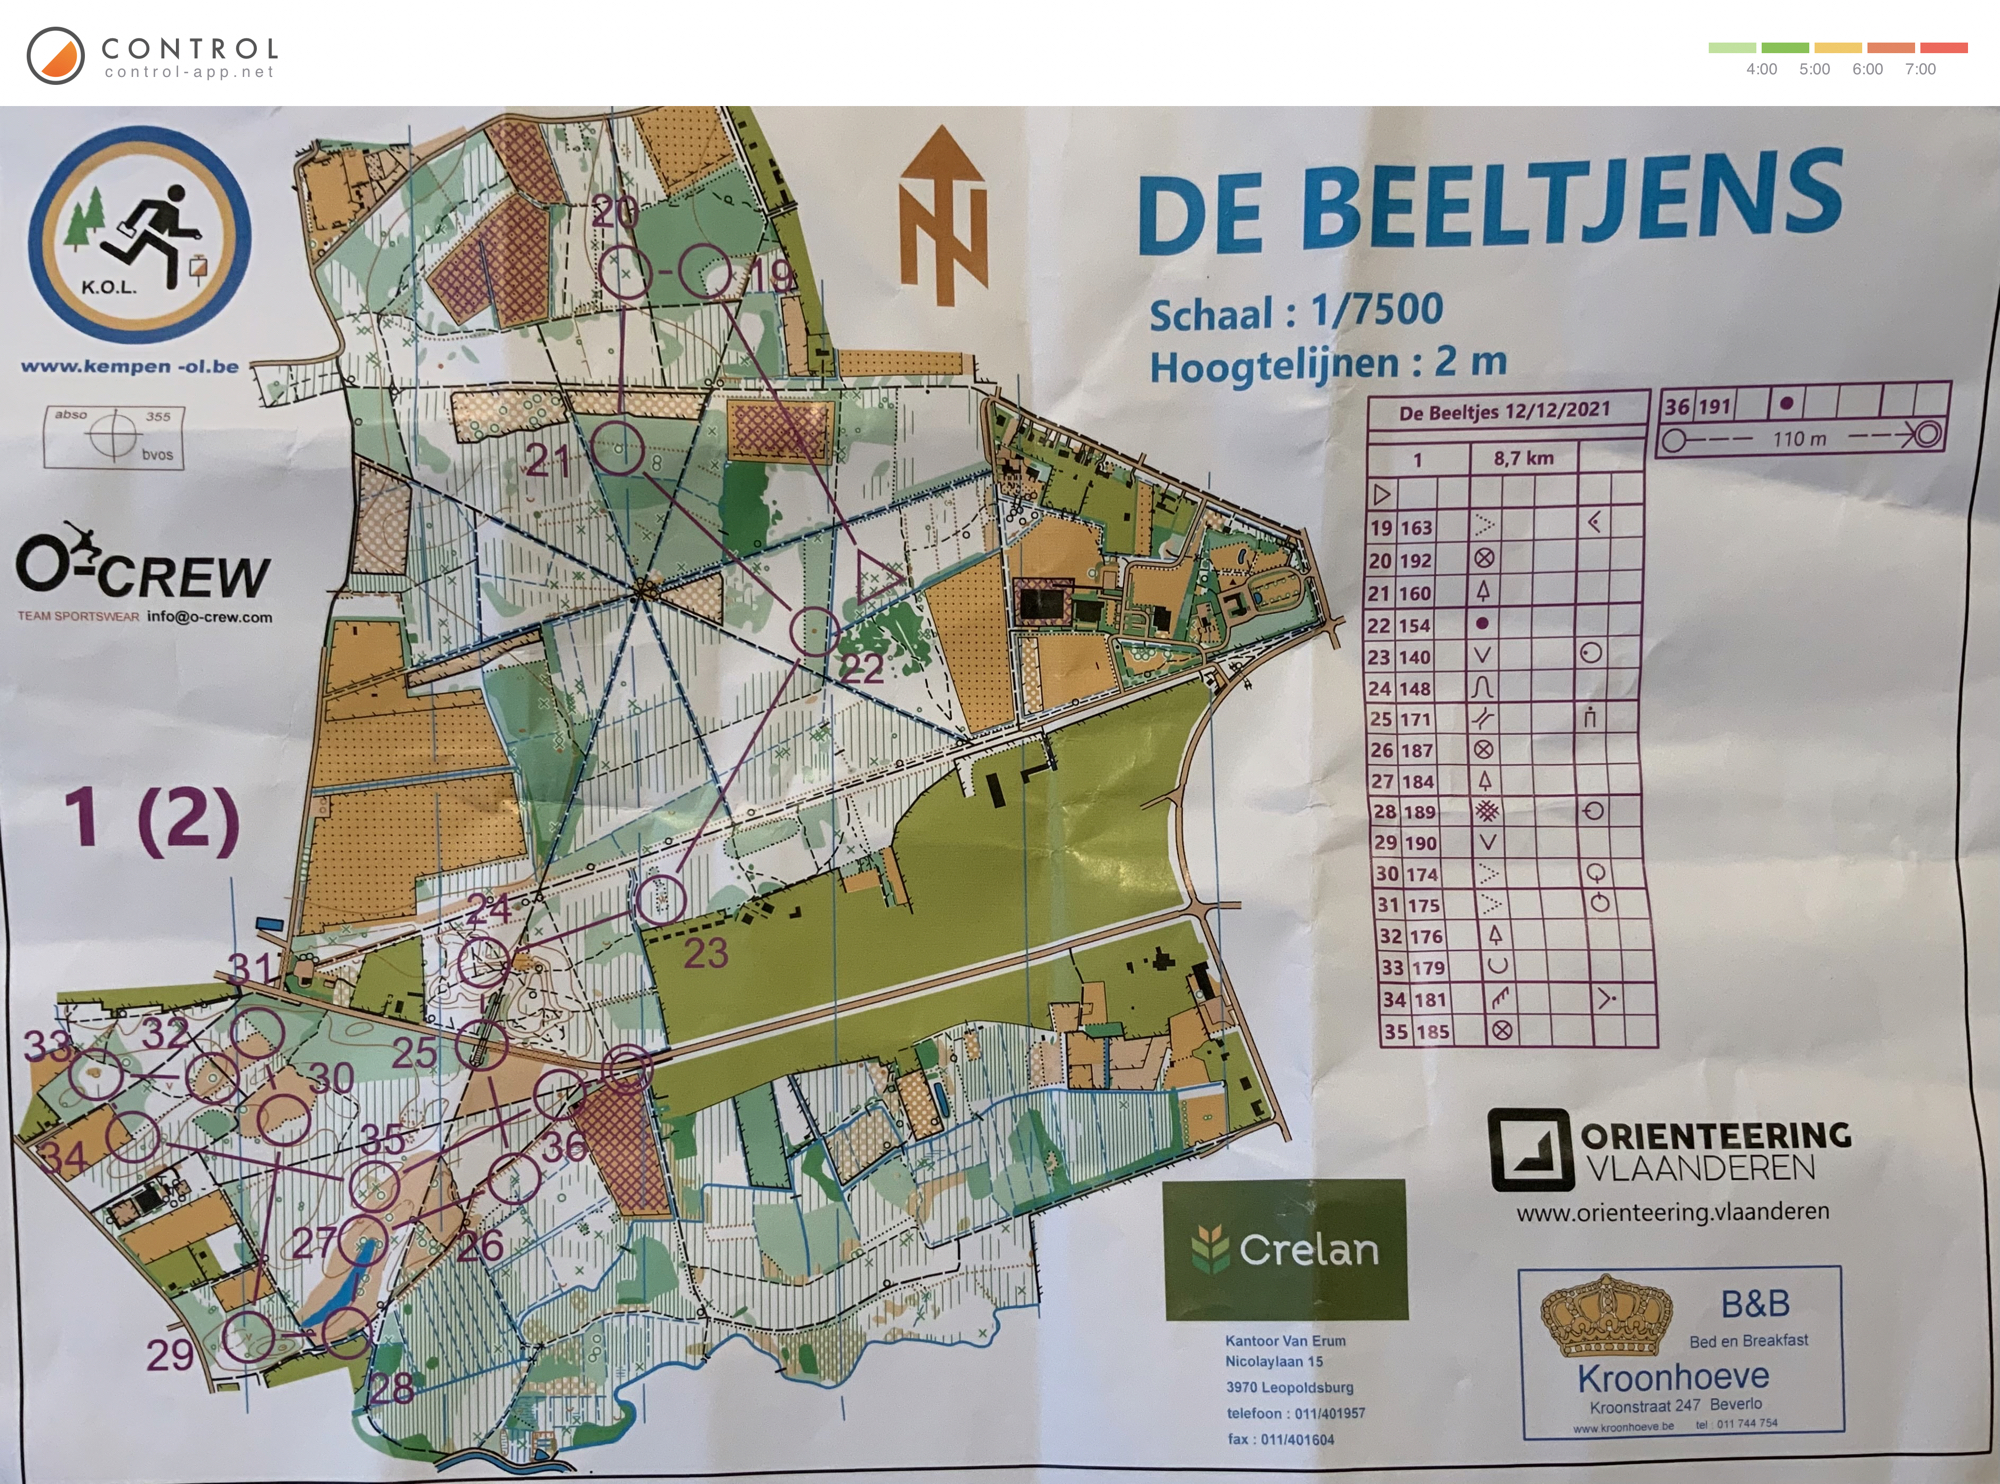 Regionale de Beeltjens - omloop 1 (kaart 2) (2021-12-12)